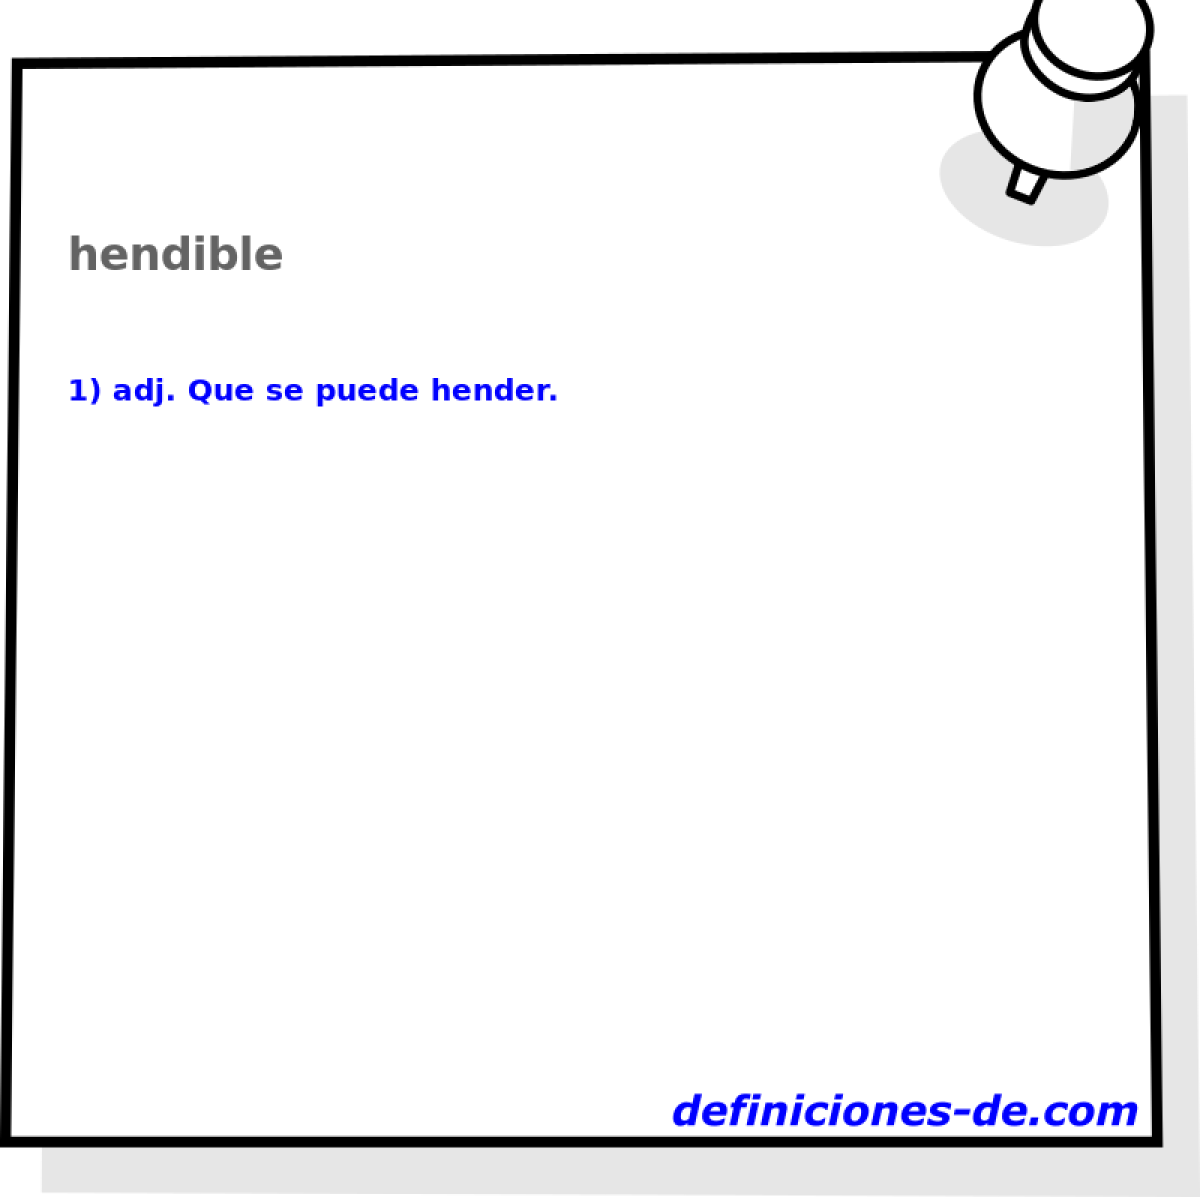 hendible 